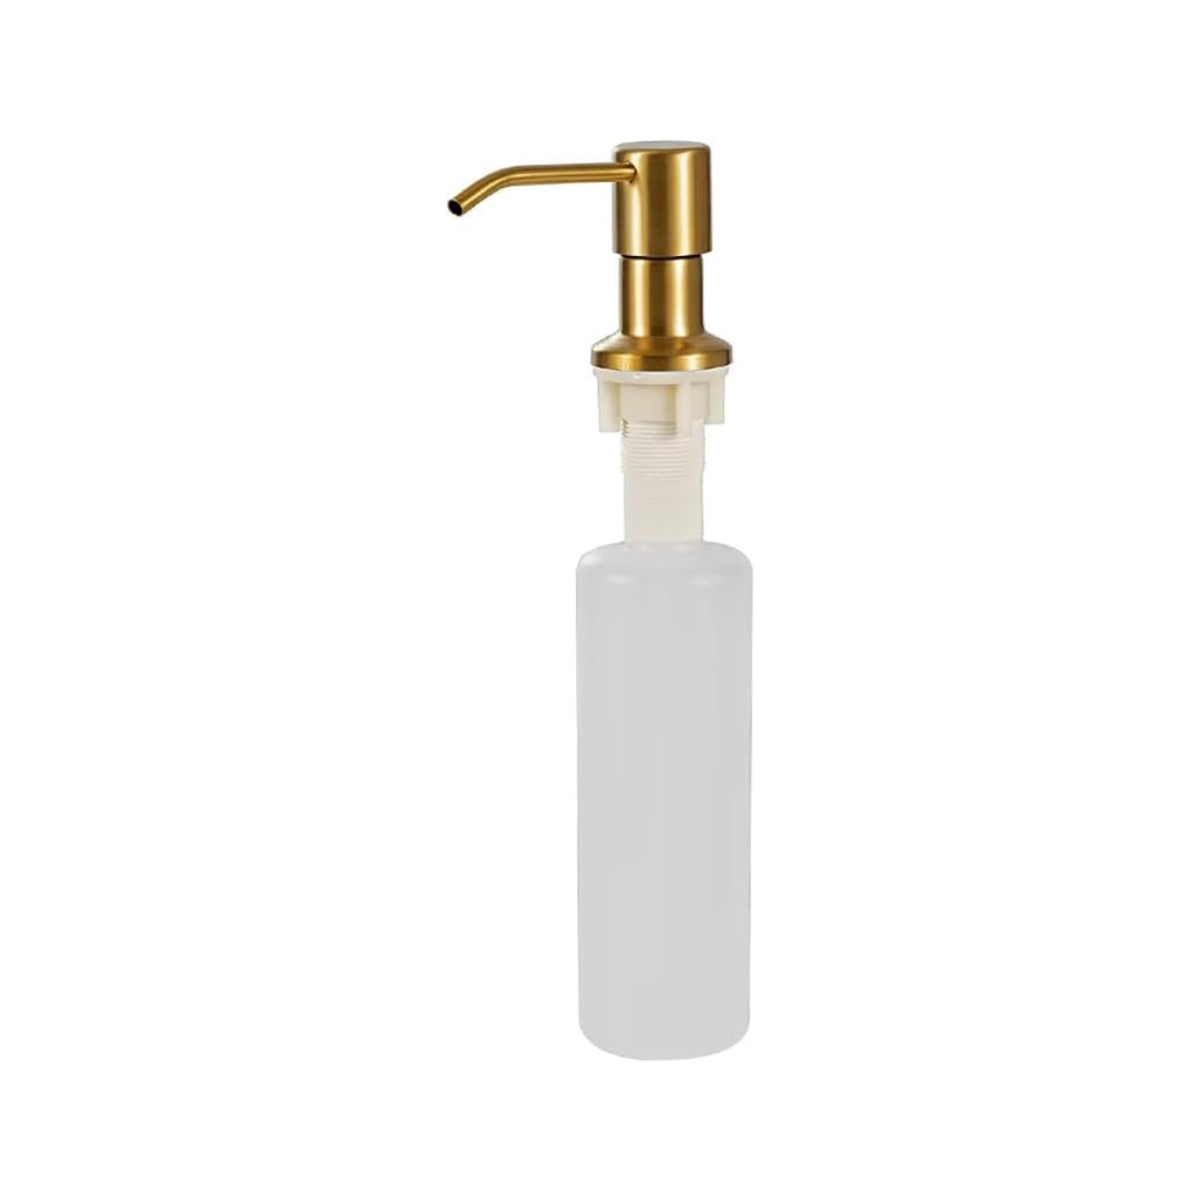 Dispenser Dosador para Detergente 300ml Aço Inox 304 Dourado Idi02 - 1